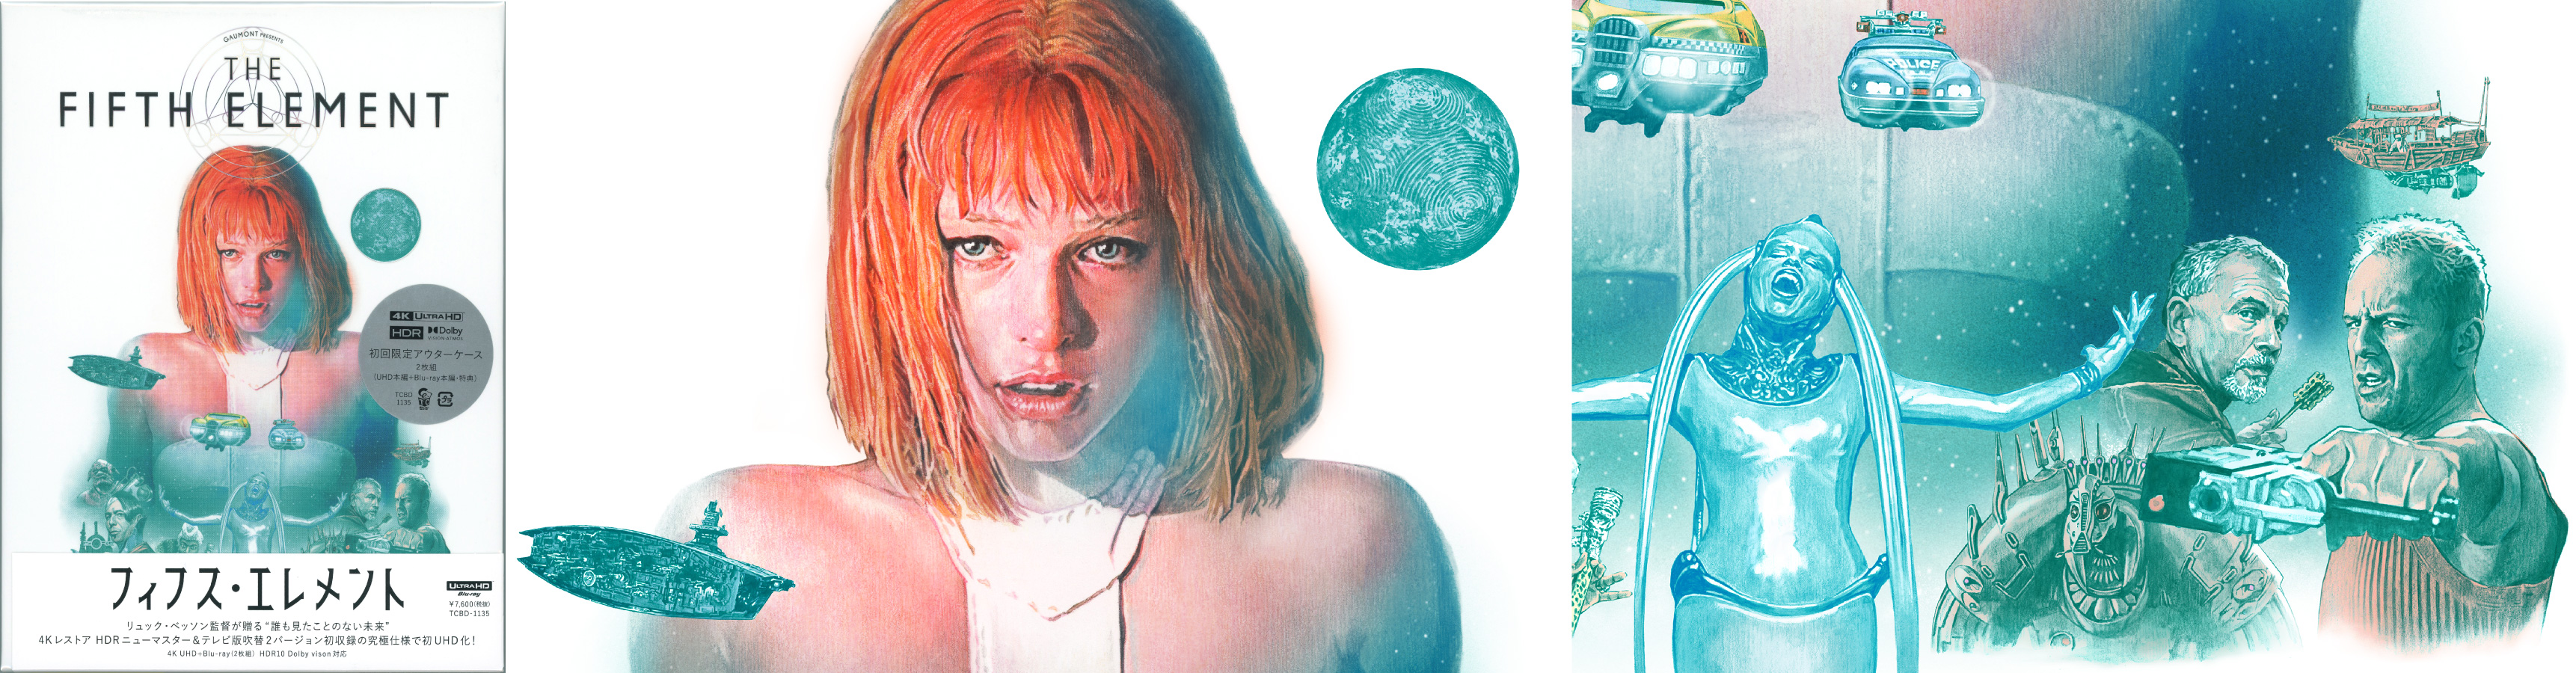 the fifth element Milla Jovovich　illustration フィフス・エレメント　イラスト